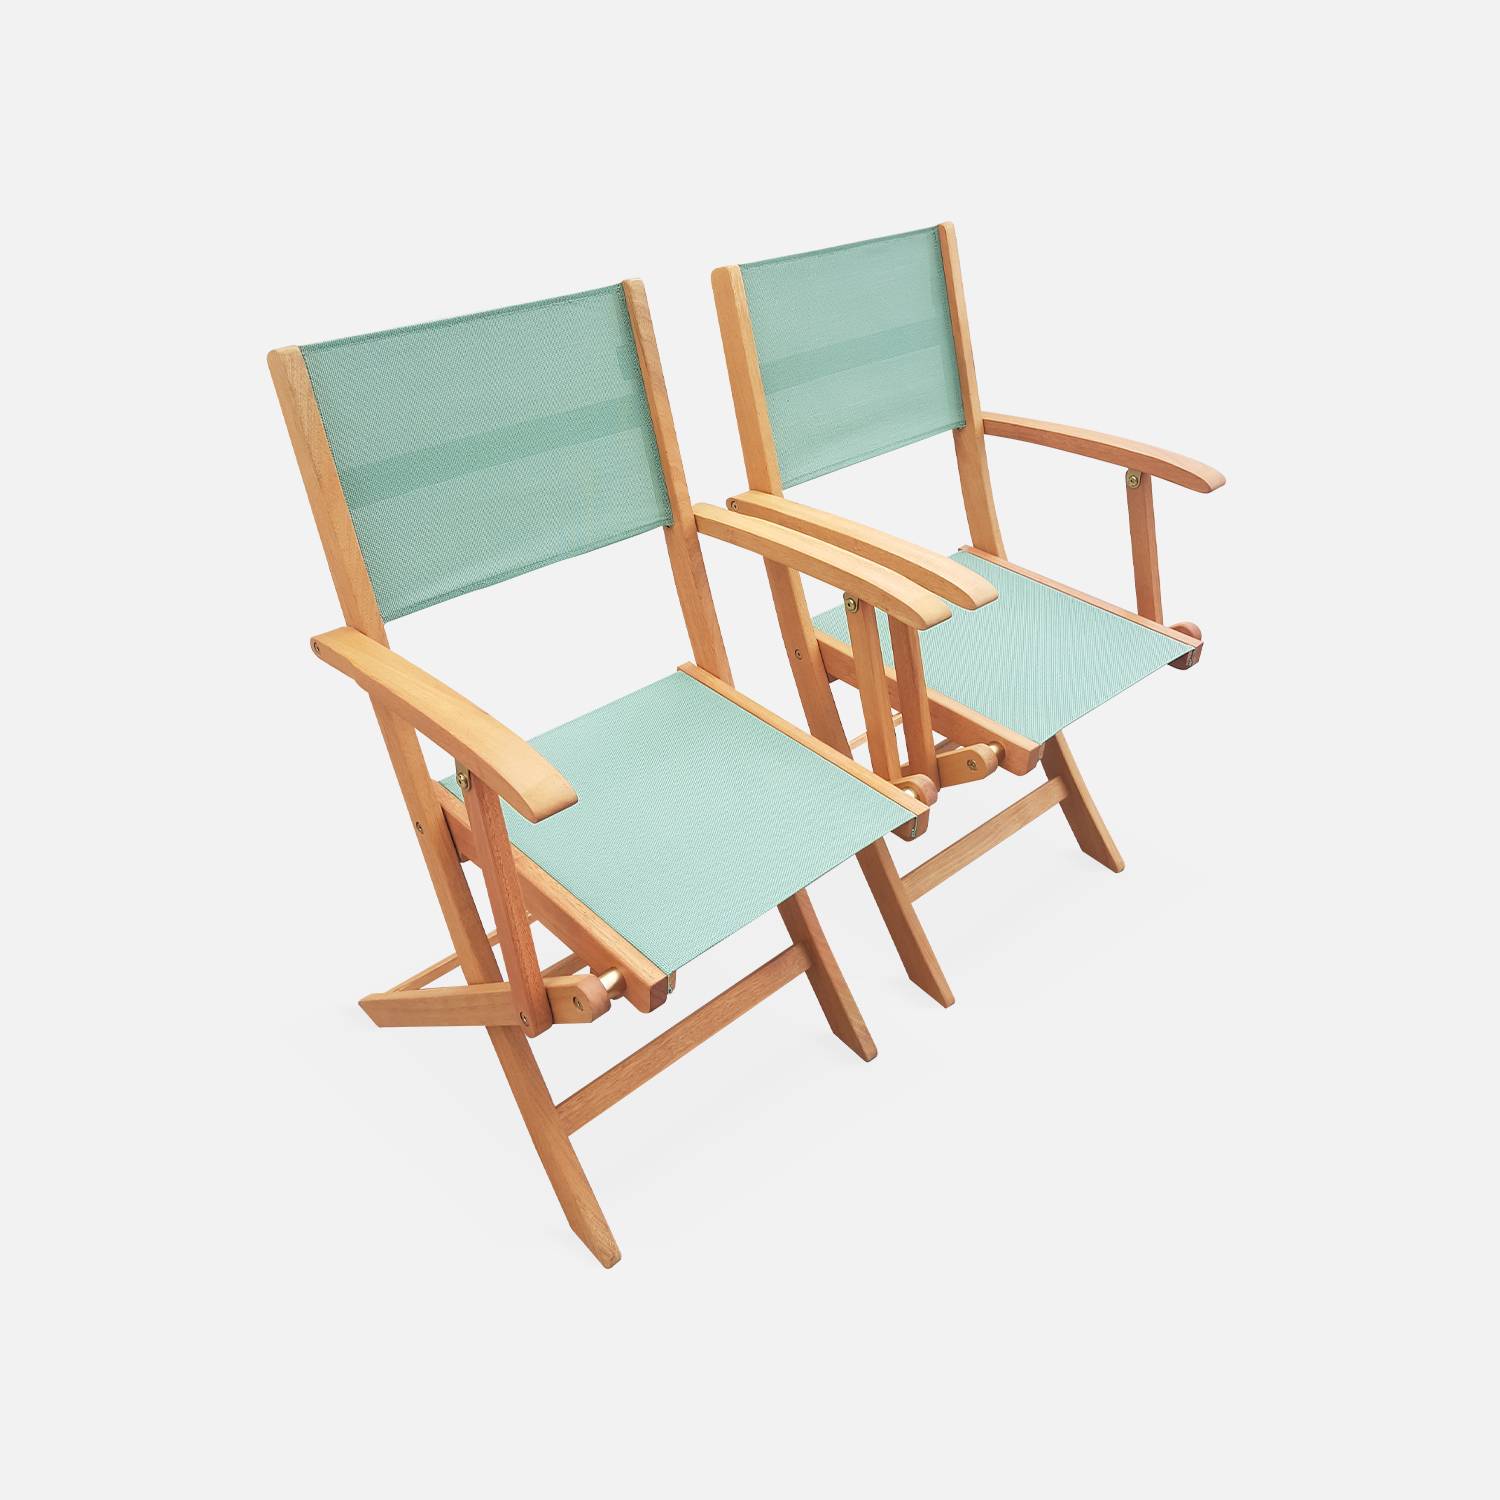 Ausziehbare Gartenmöbel aus Holz - Almeria - Tisch 120/180 cm mit Verlängerung, 2 Sesseln und 4 Stühlen aus geöltem FSC-Eukalyptusholz und grüngrauem Textilene Photo4